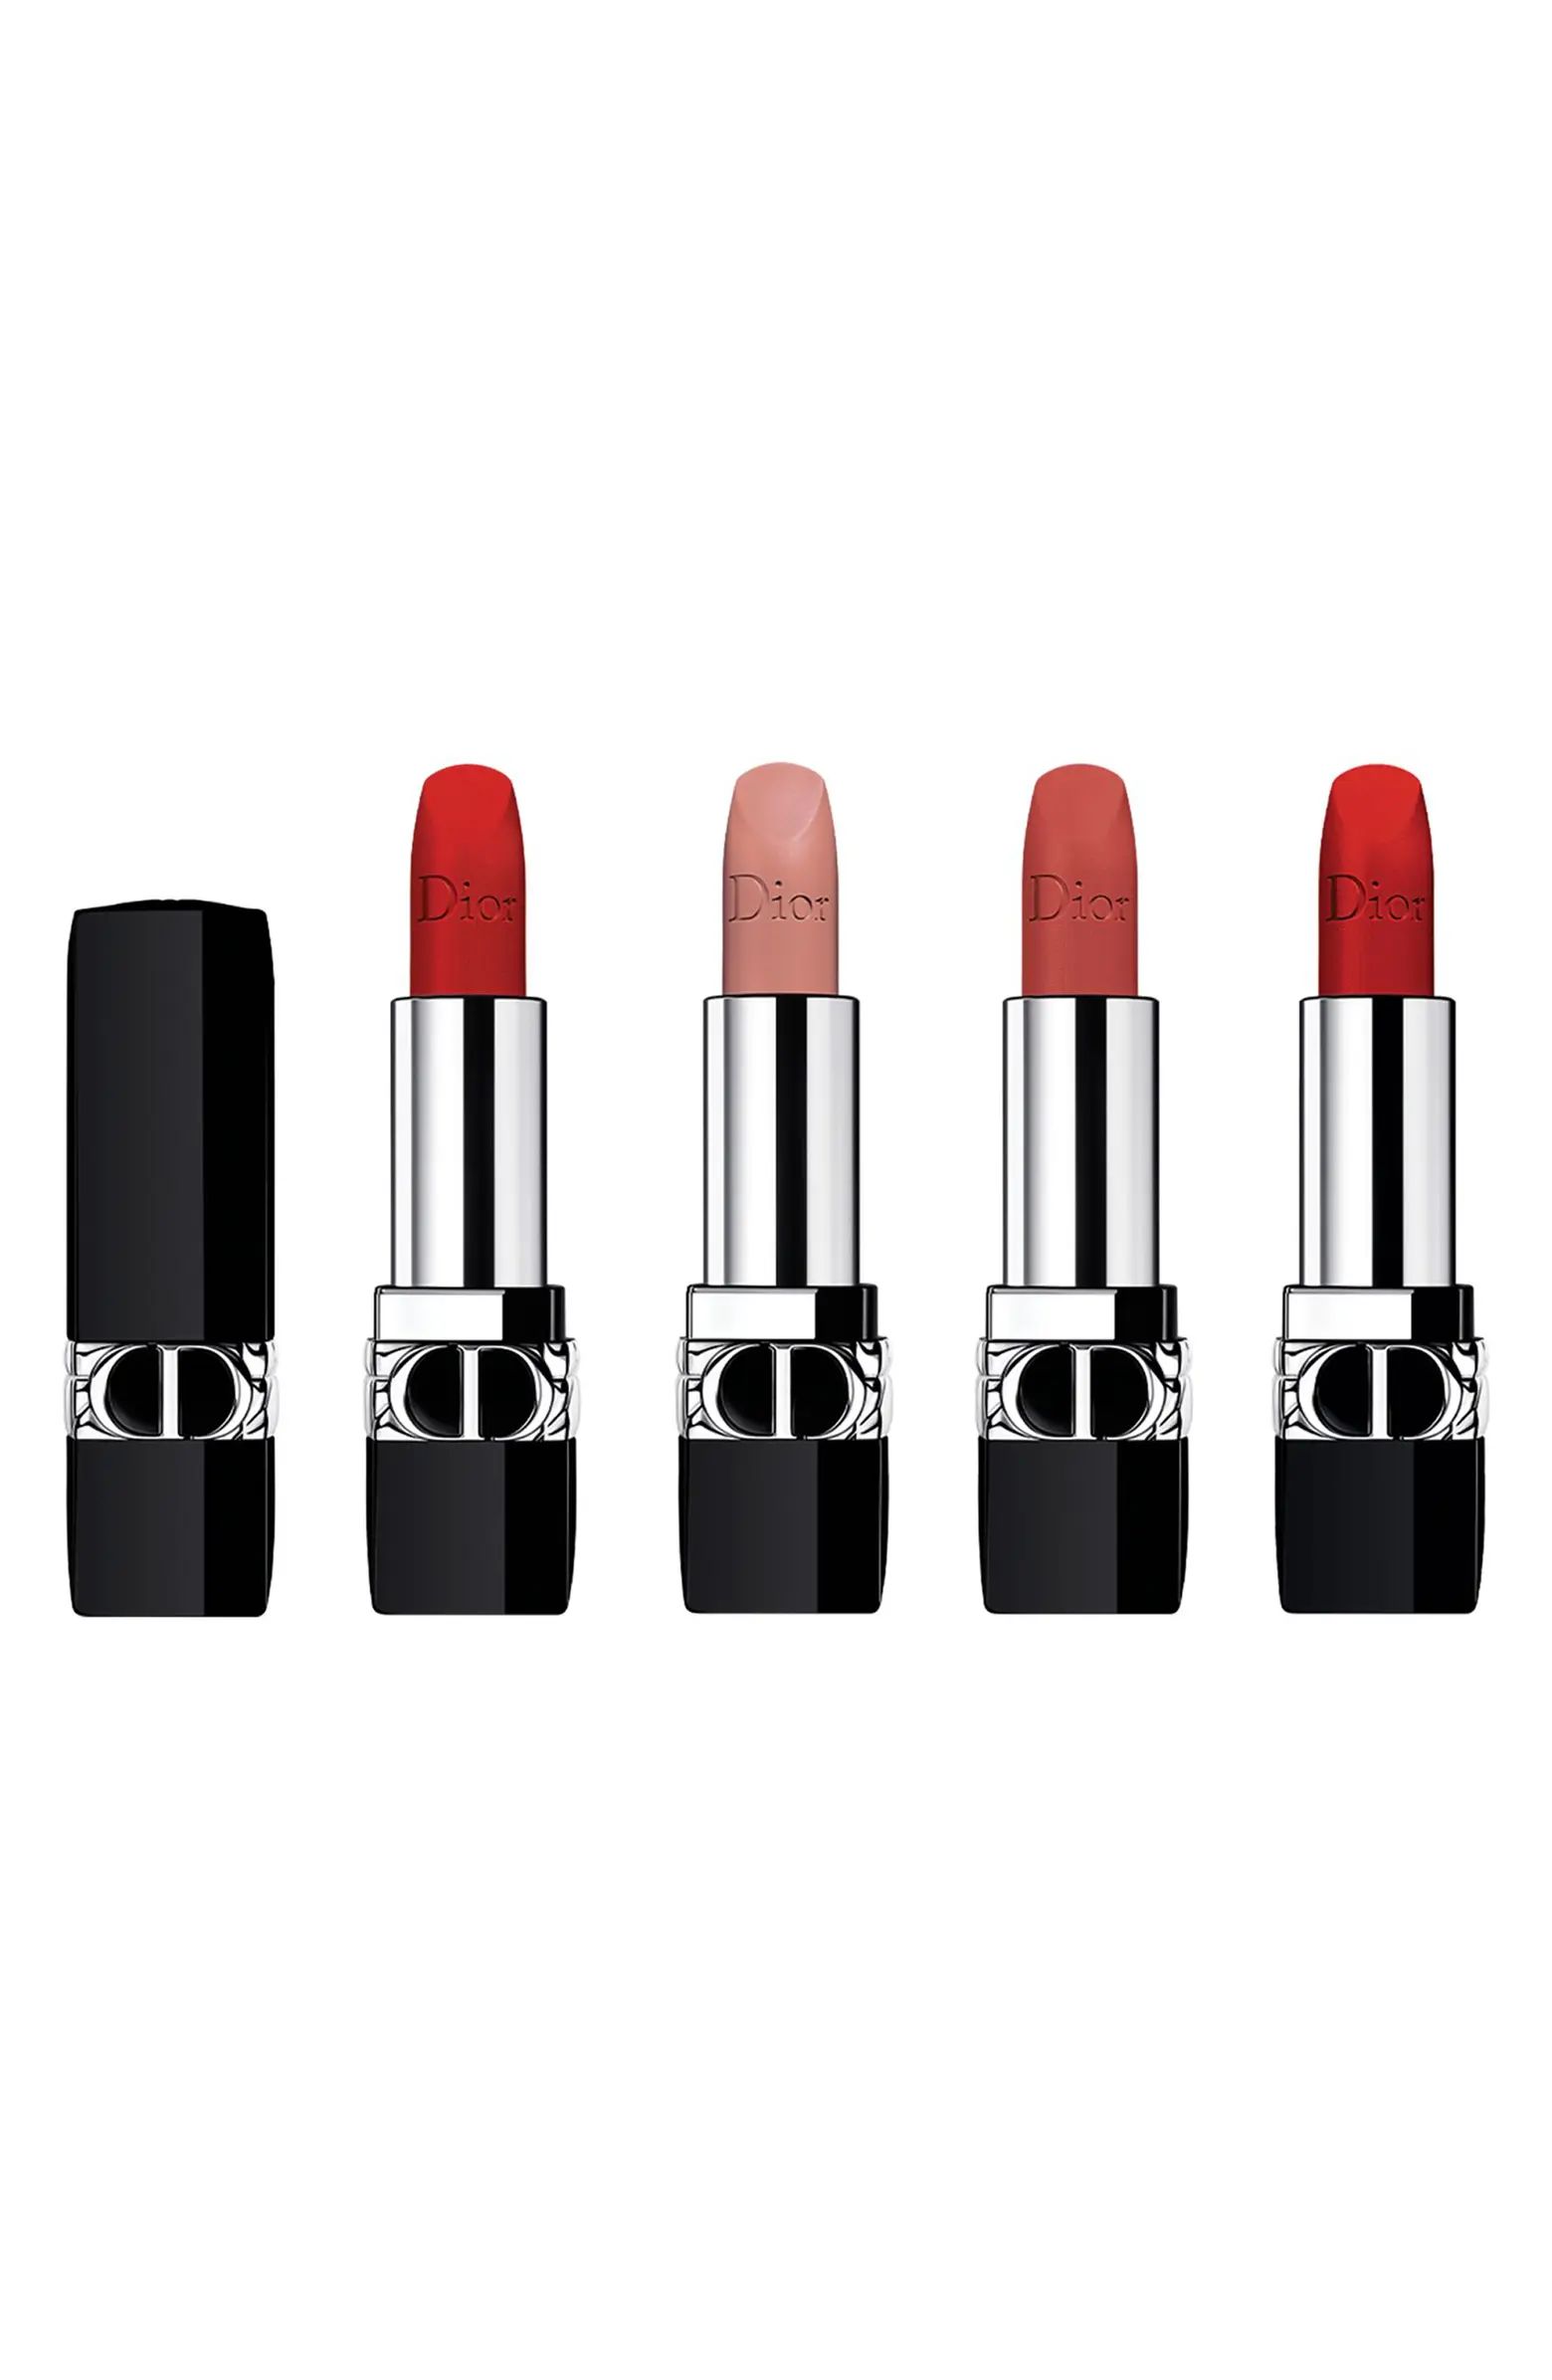 DIOR Rouge Dior Lipstick Set $77 Value | Nordstrom | Nordstrom